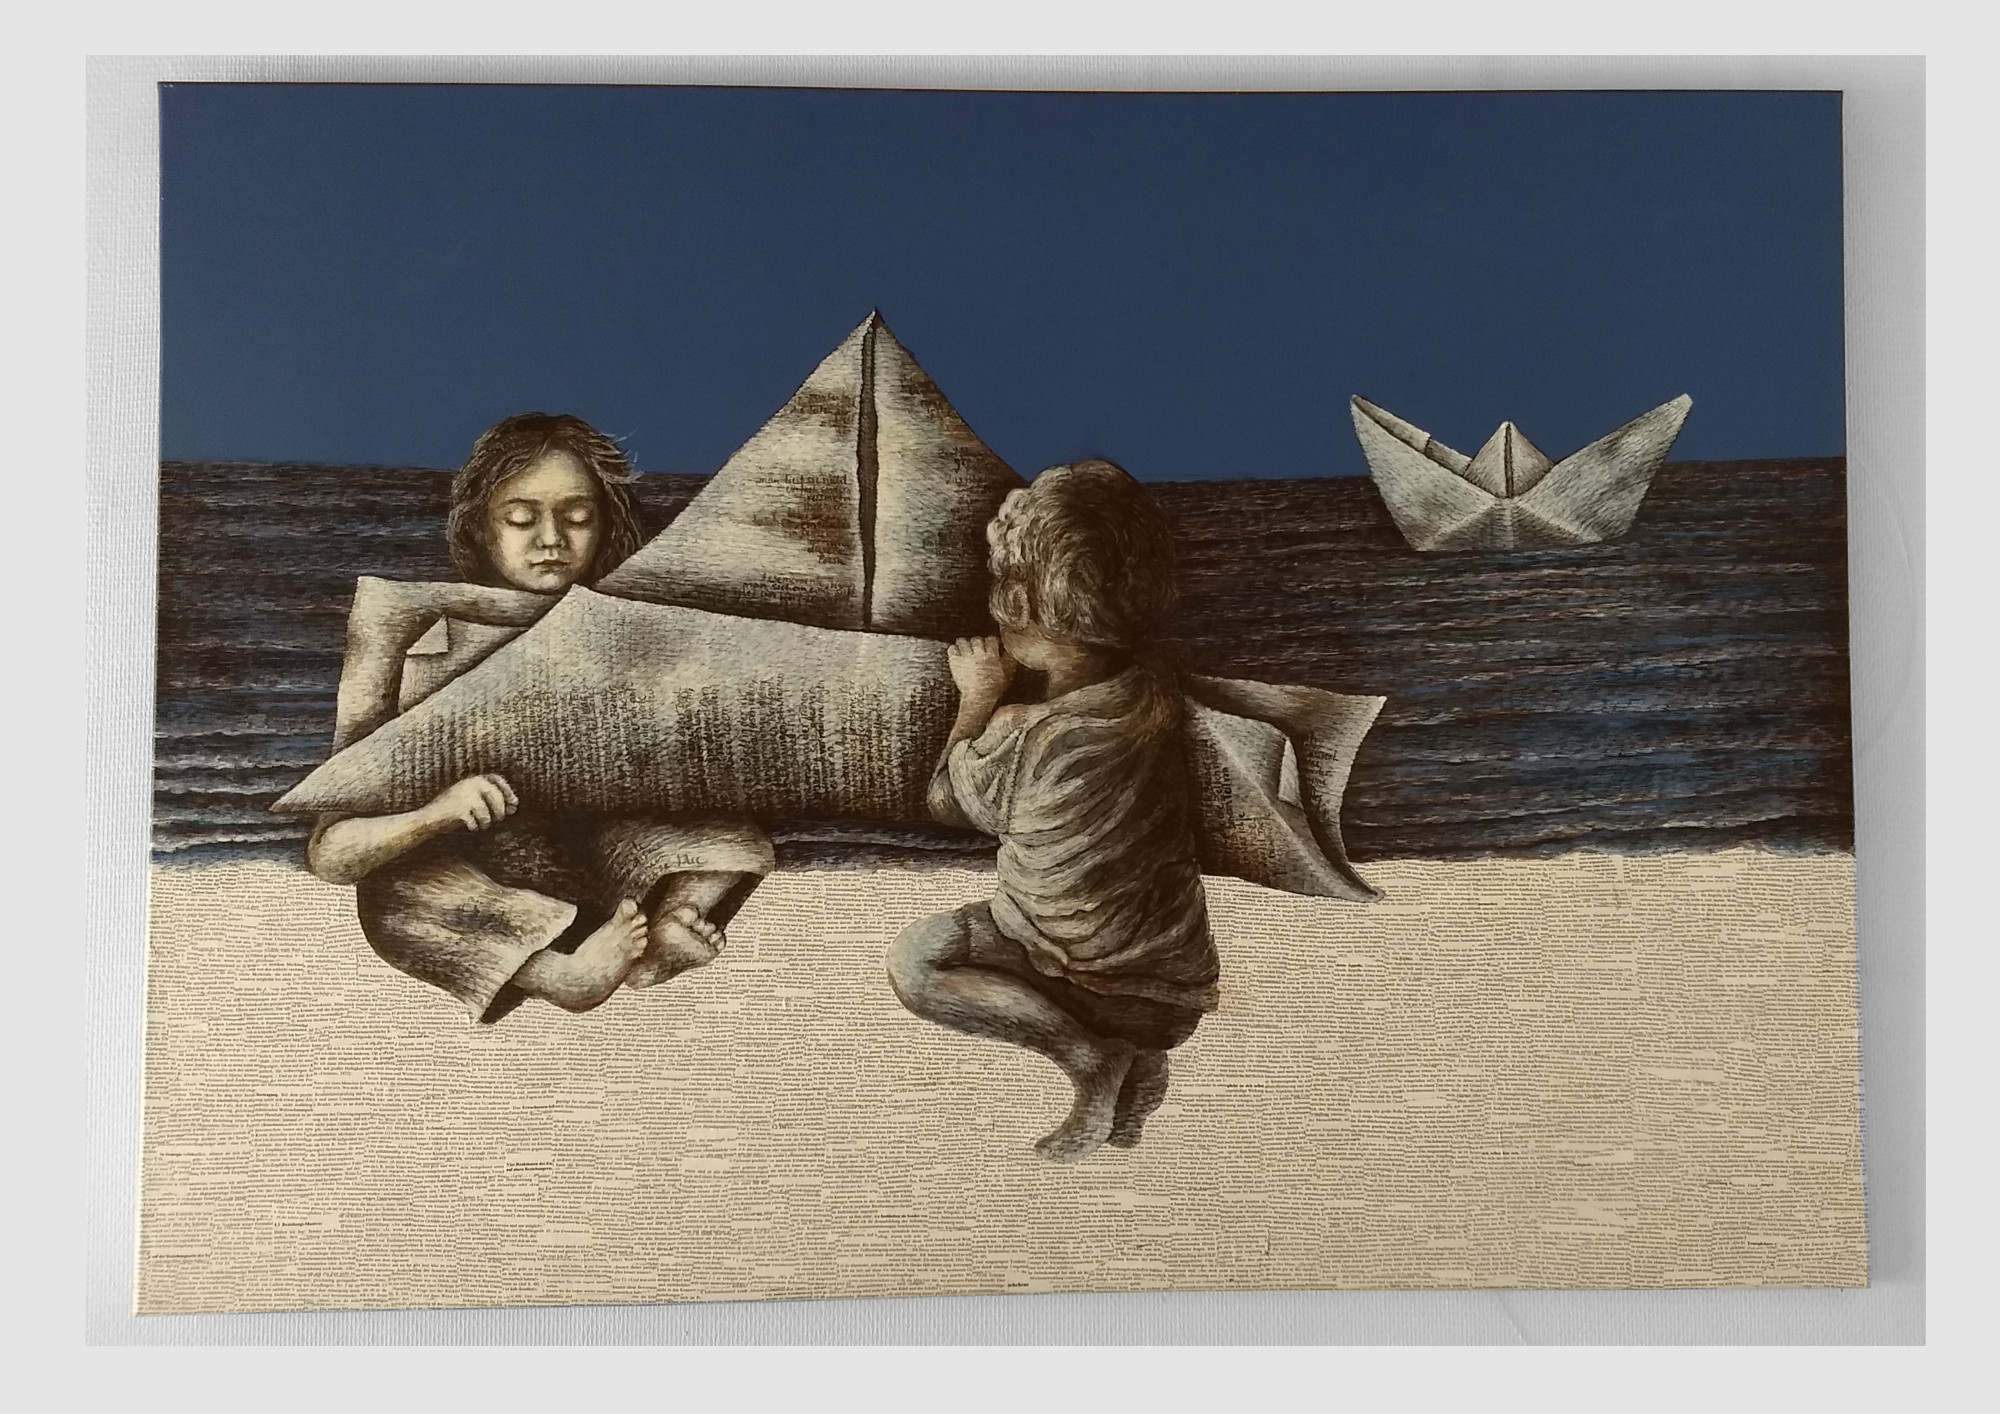 Malerei für bibliophile Bücherfans: Papierschiff, zwei Kinder falten ein Boot aus Worten.